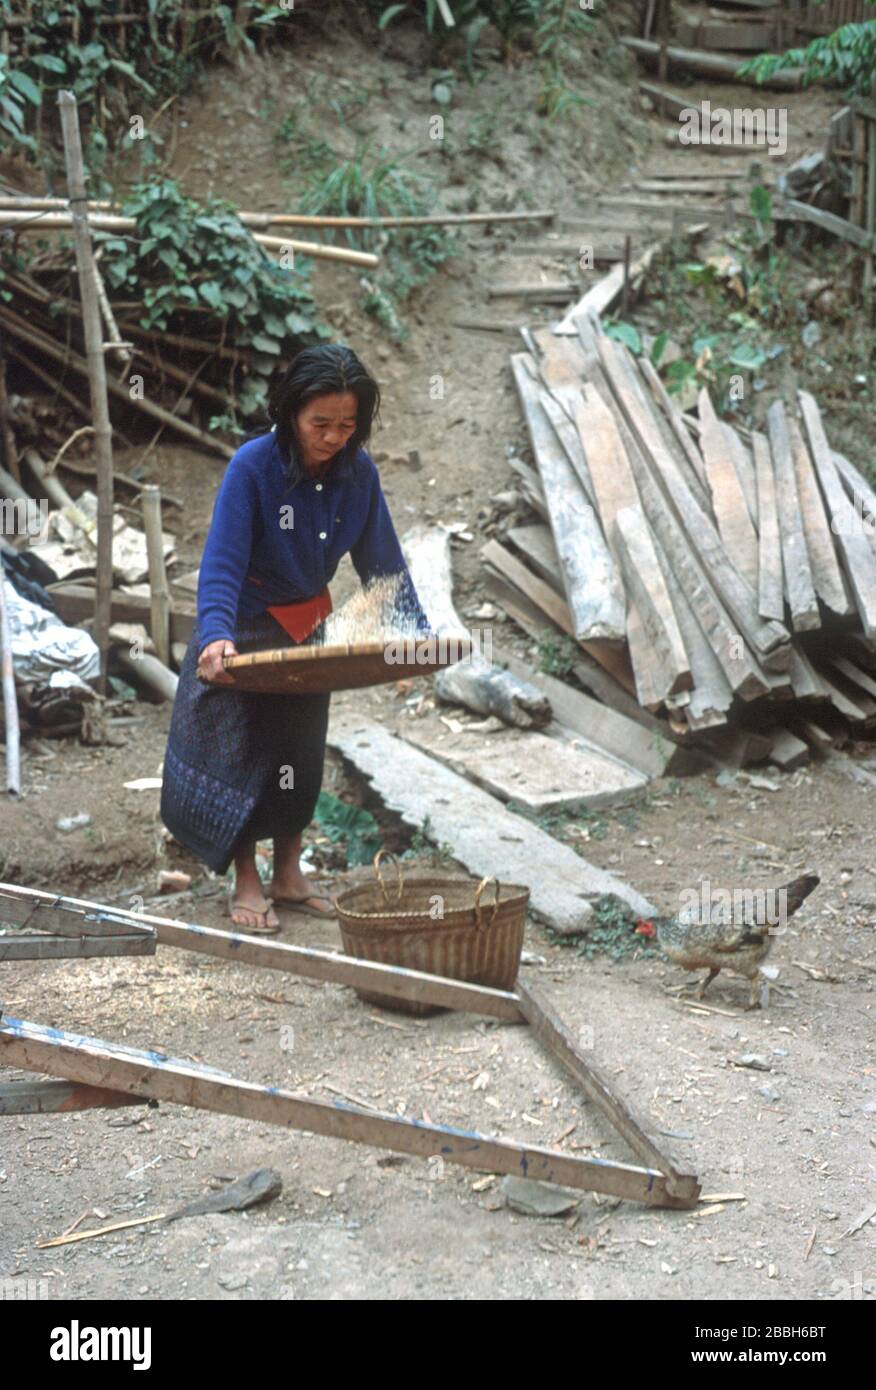 Une femme lao en robe traditionnelle jette du riz dans l'air d'un plateau tissé à Luang Prabang, au Laos. Ce fauchage permet à l'air de séparer les grains comestibles des tiges, du foin, de la menue paille et des insectes nuisibles. Elle a un panier en osier pour tenir le riz et un poulet piqu à travers les restes sur le sol. La ville de Luang Prabang est classée au patrimoine mondial de l'UNESCO. Banque D'Images